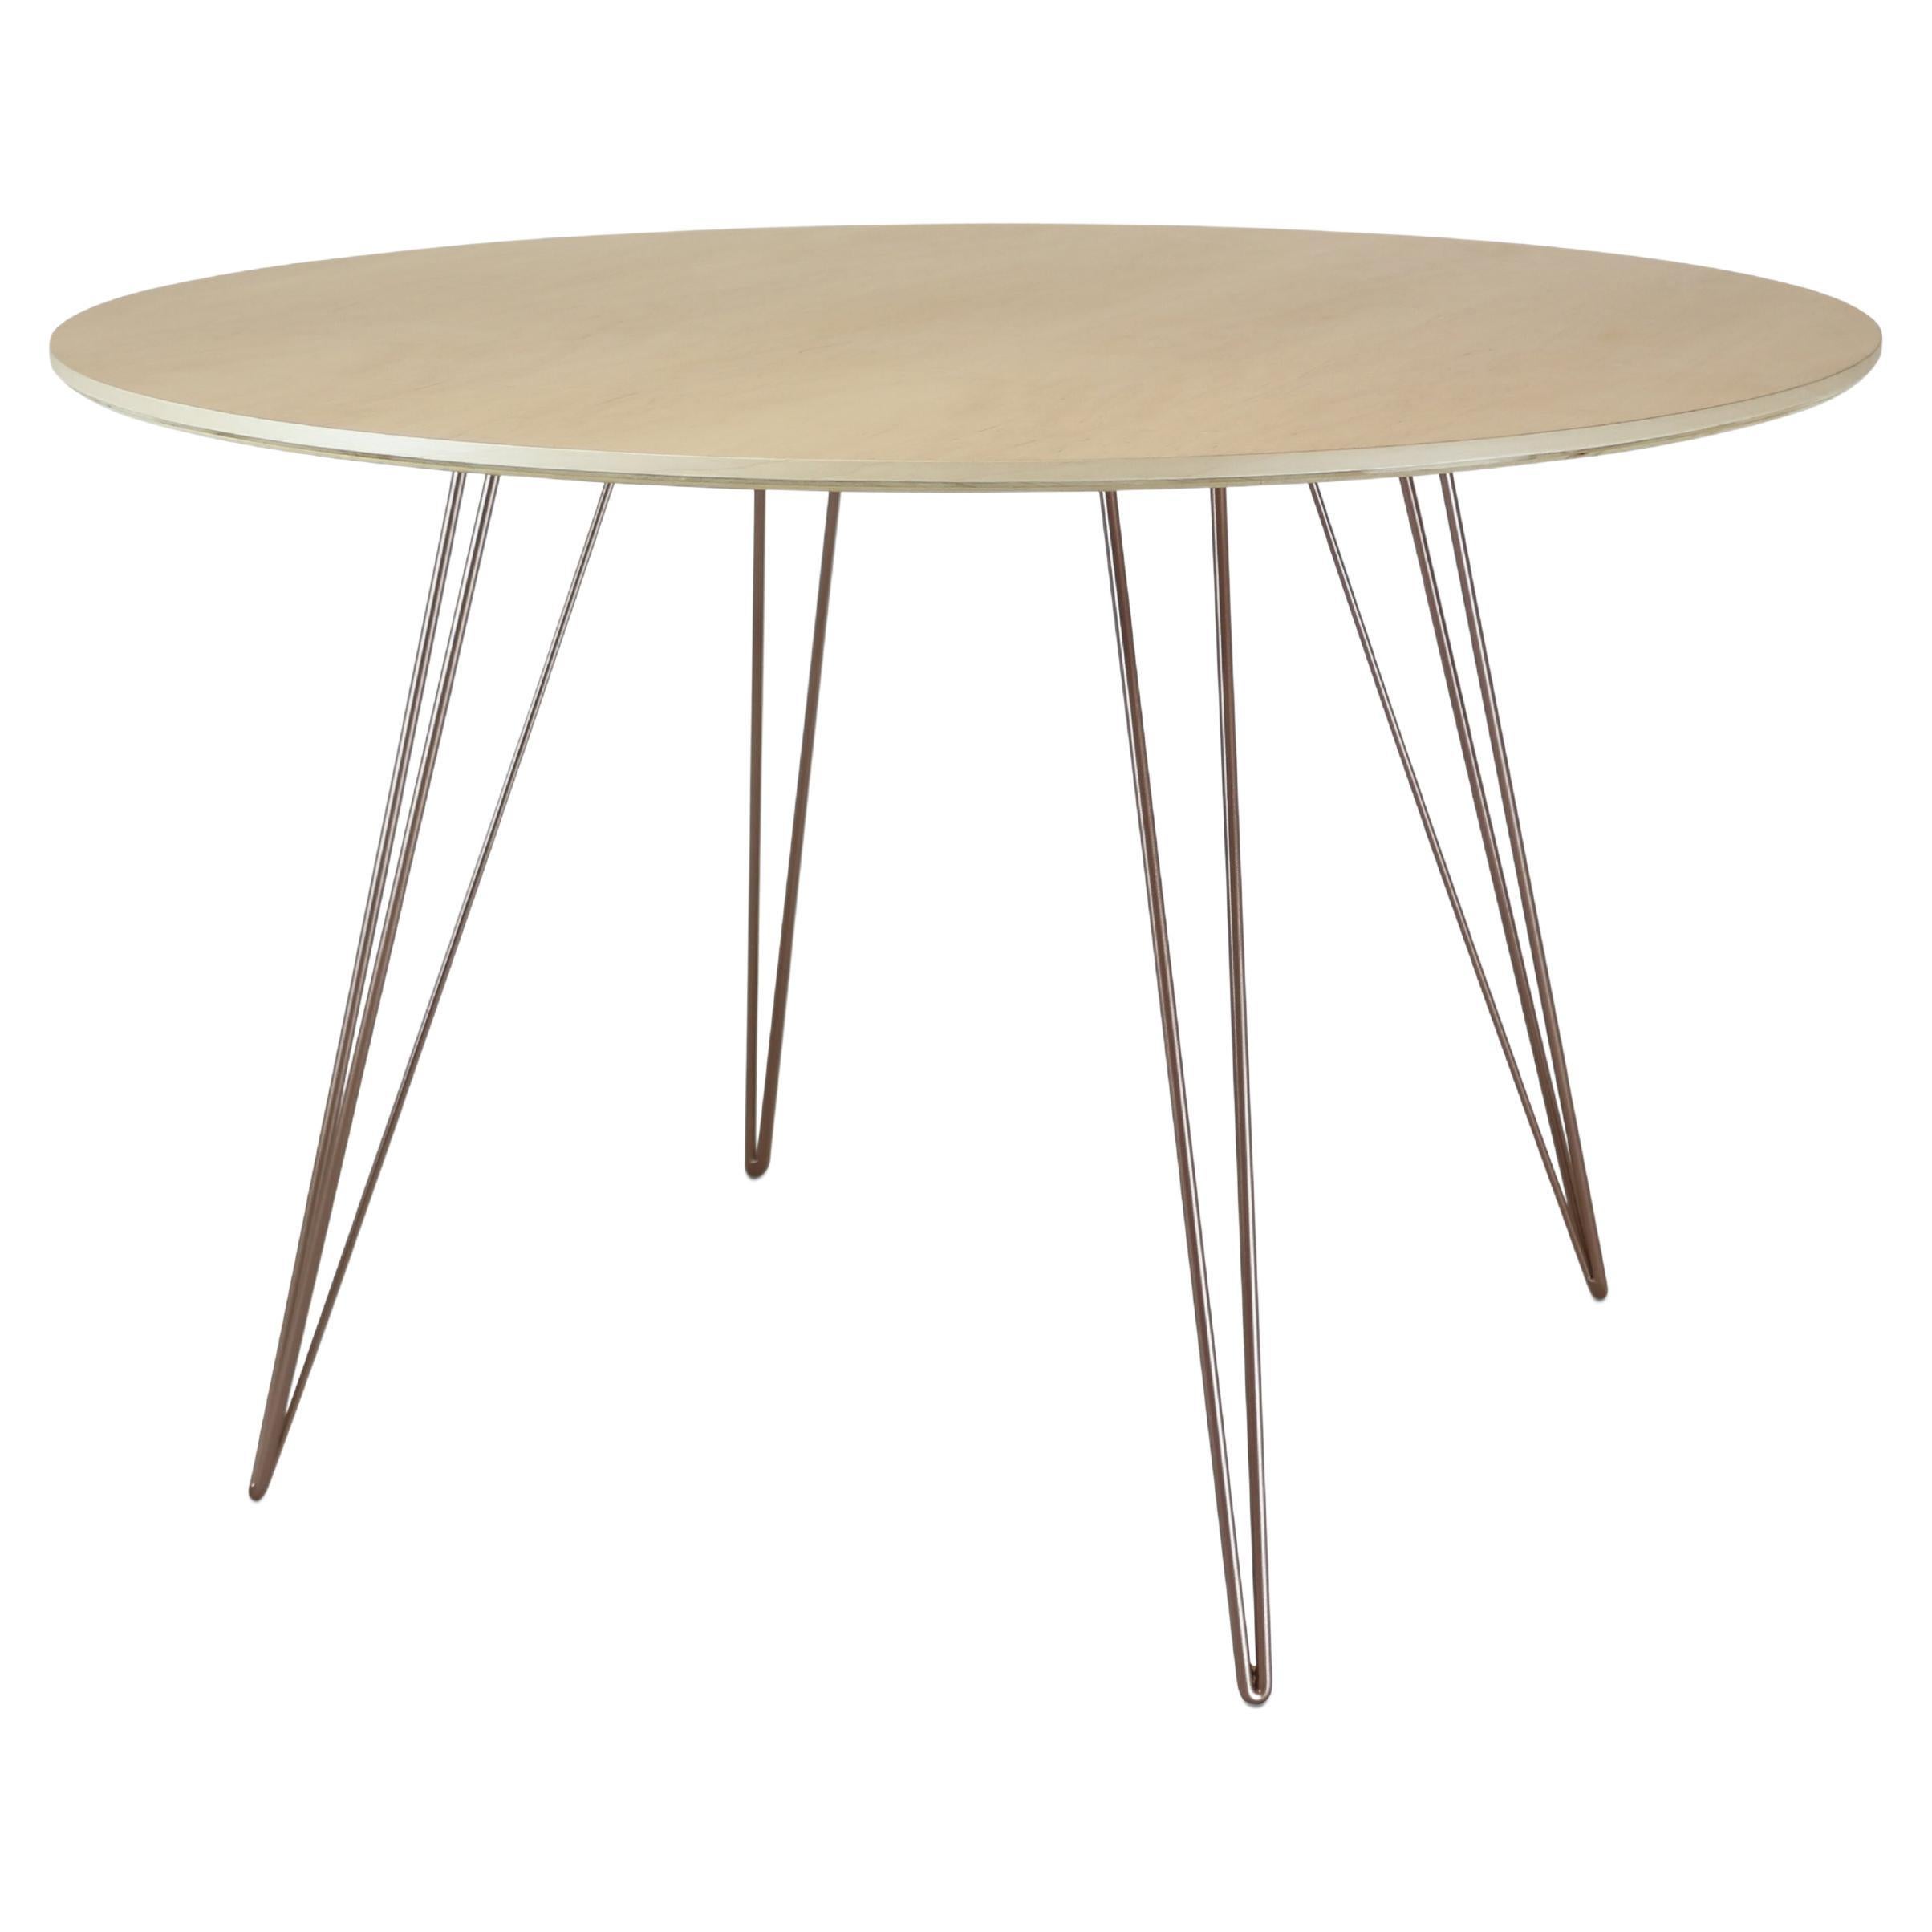 Table de salle à manger Maple Williams avec pieds en épingle à cheveux en cuivre rose, plateau en forme de cercle